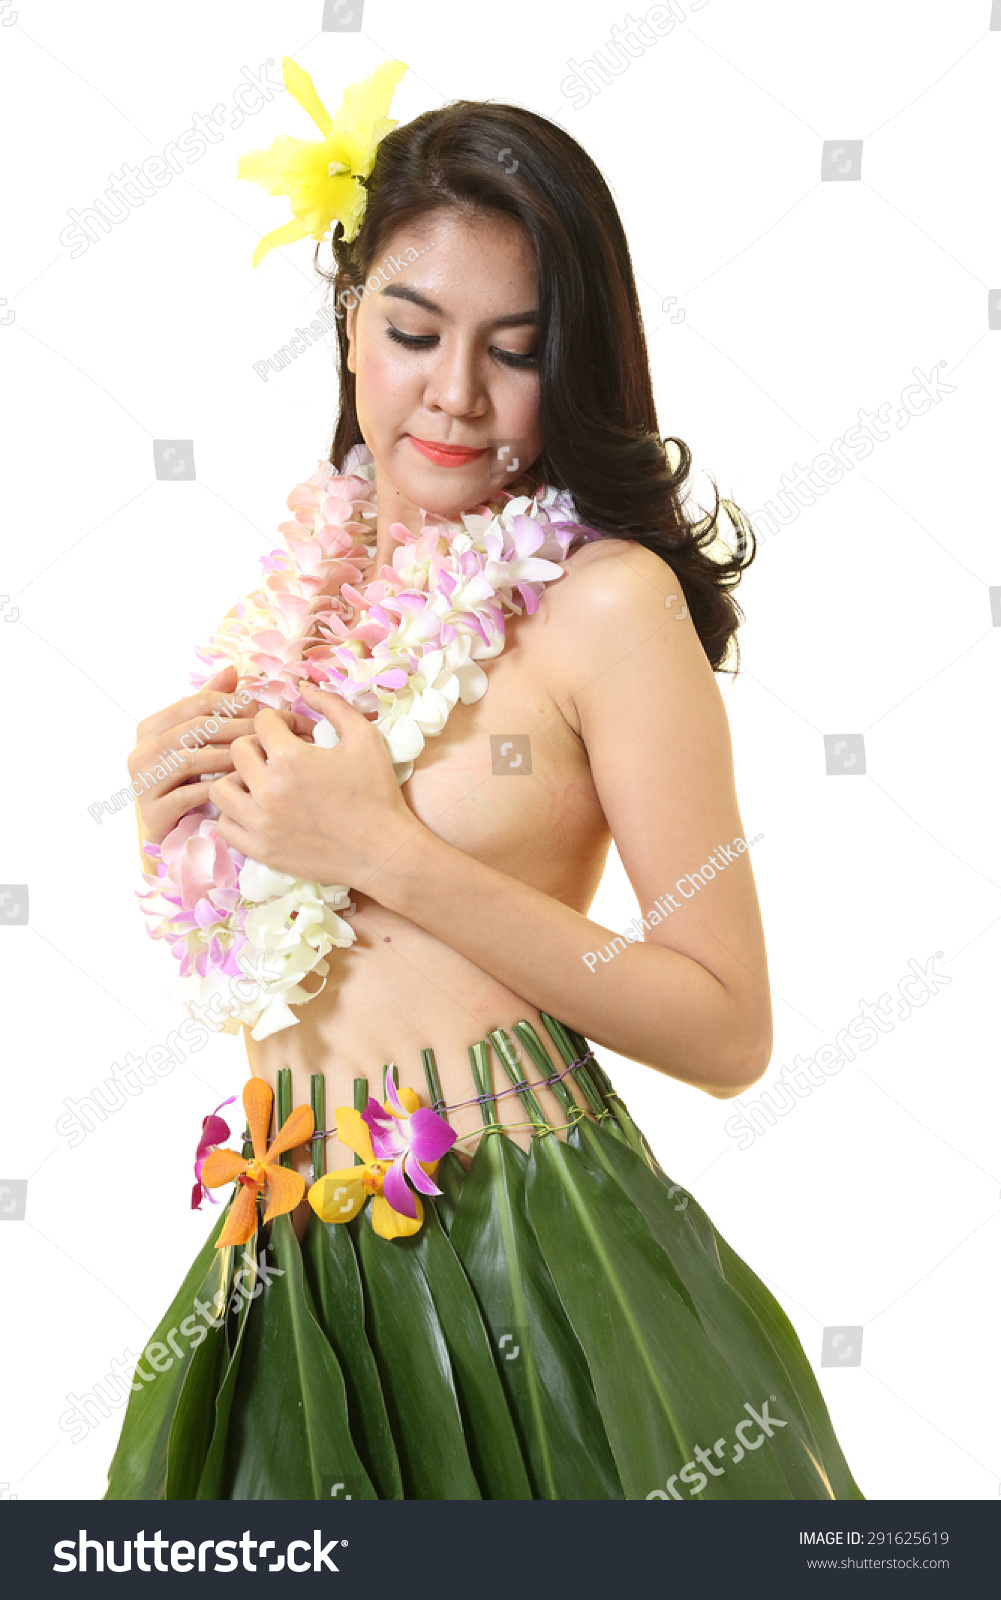 dressing up hawaiian style